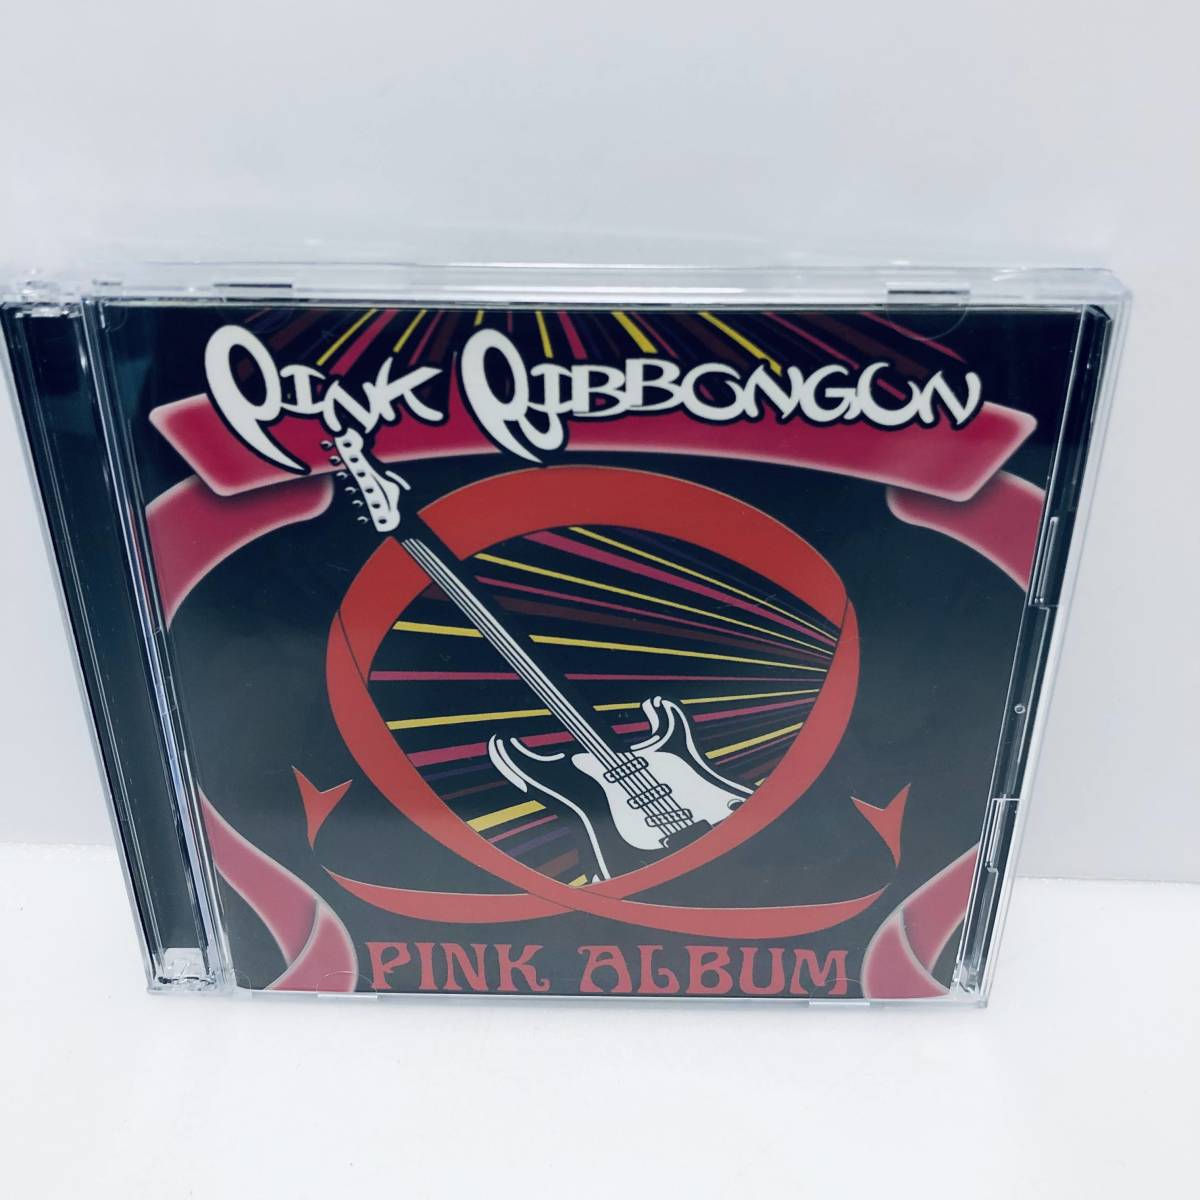 【CD】ピンクリボン軍 「PINK ALBUM」 初回盤CD+DVD ※その他CDも出品中です！同梱承ります。